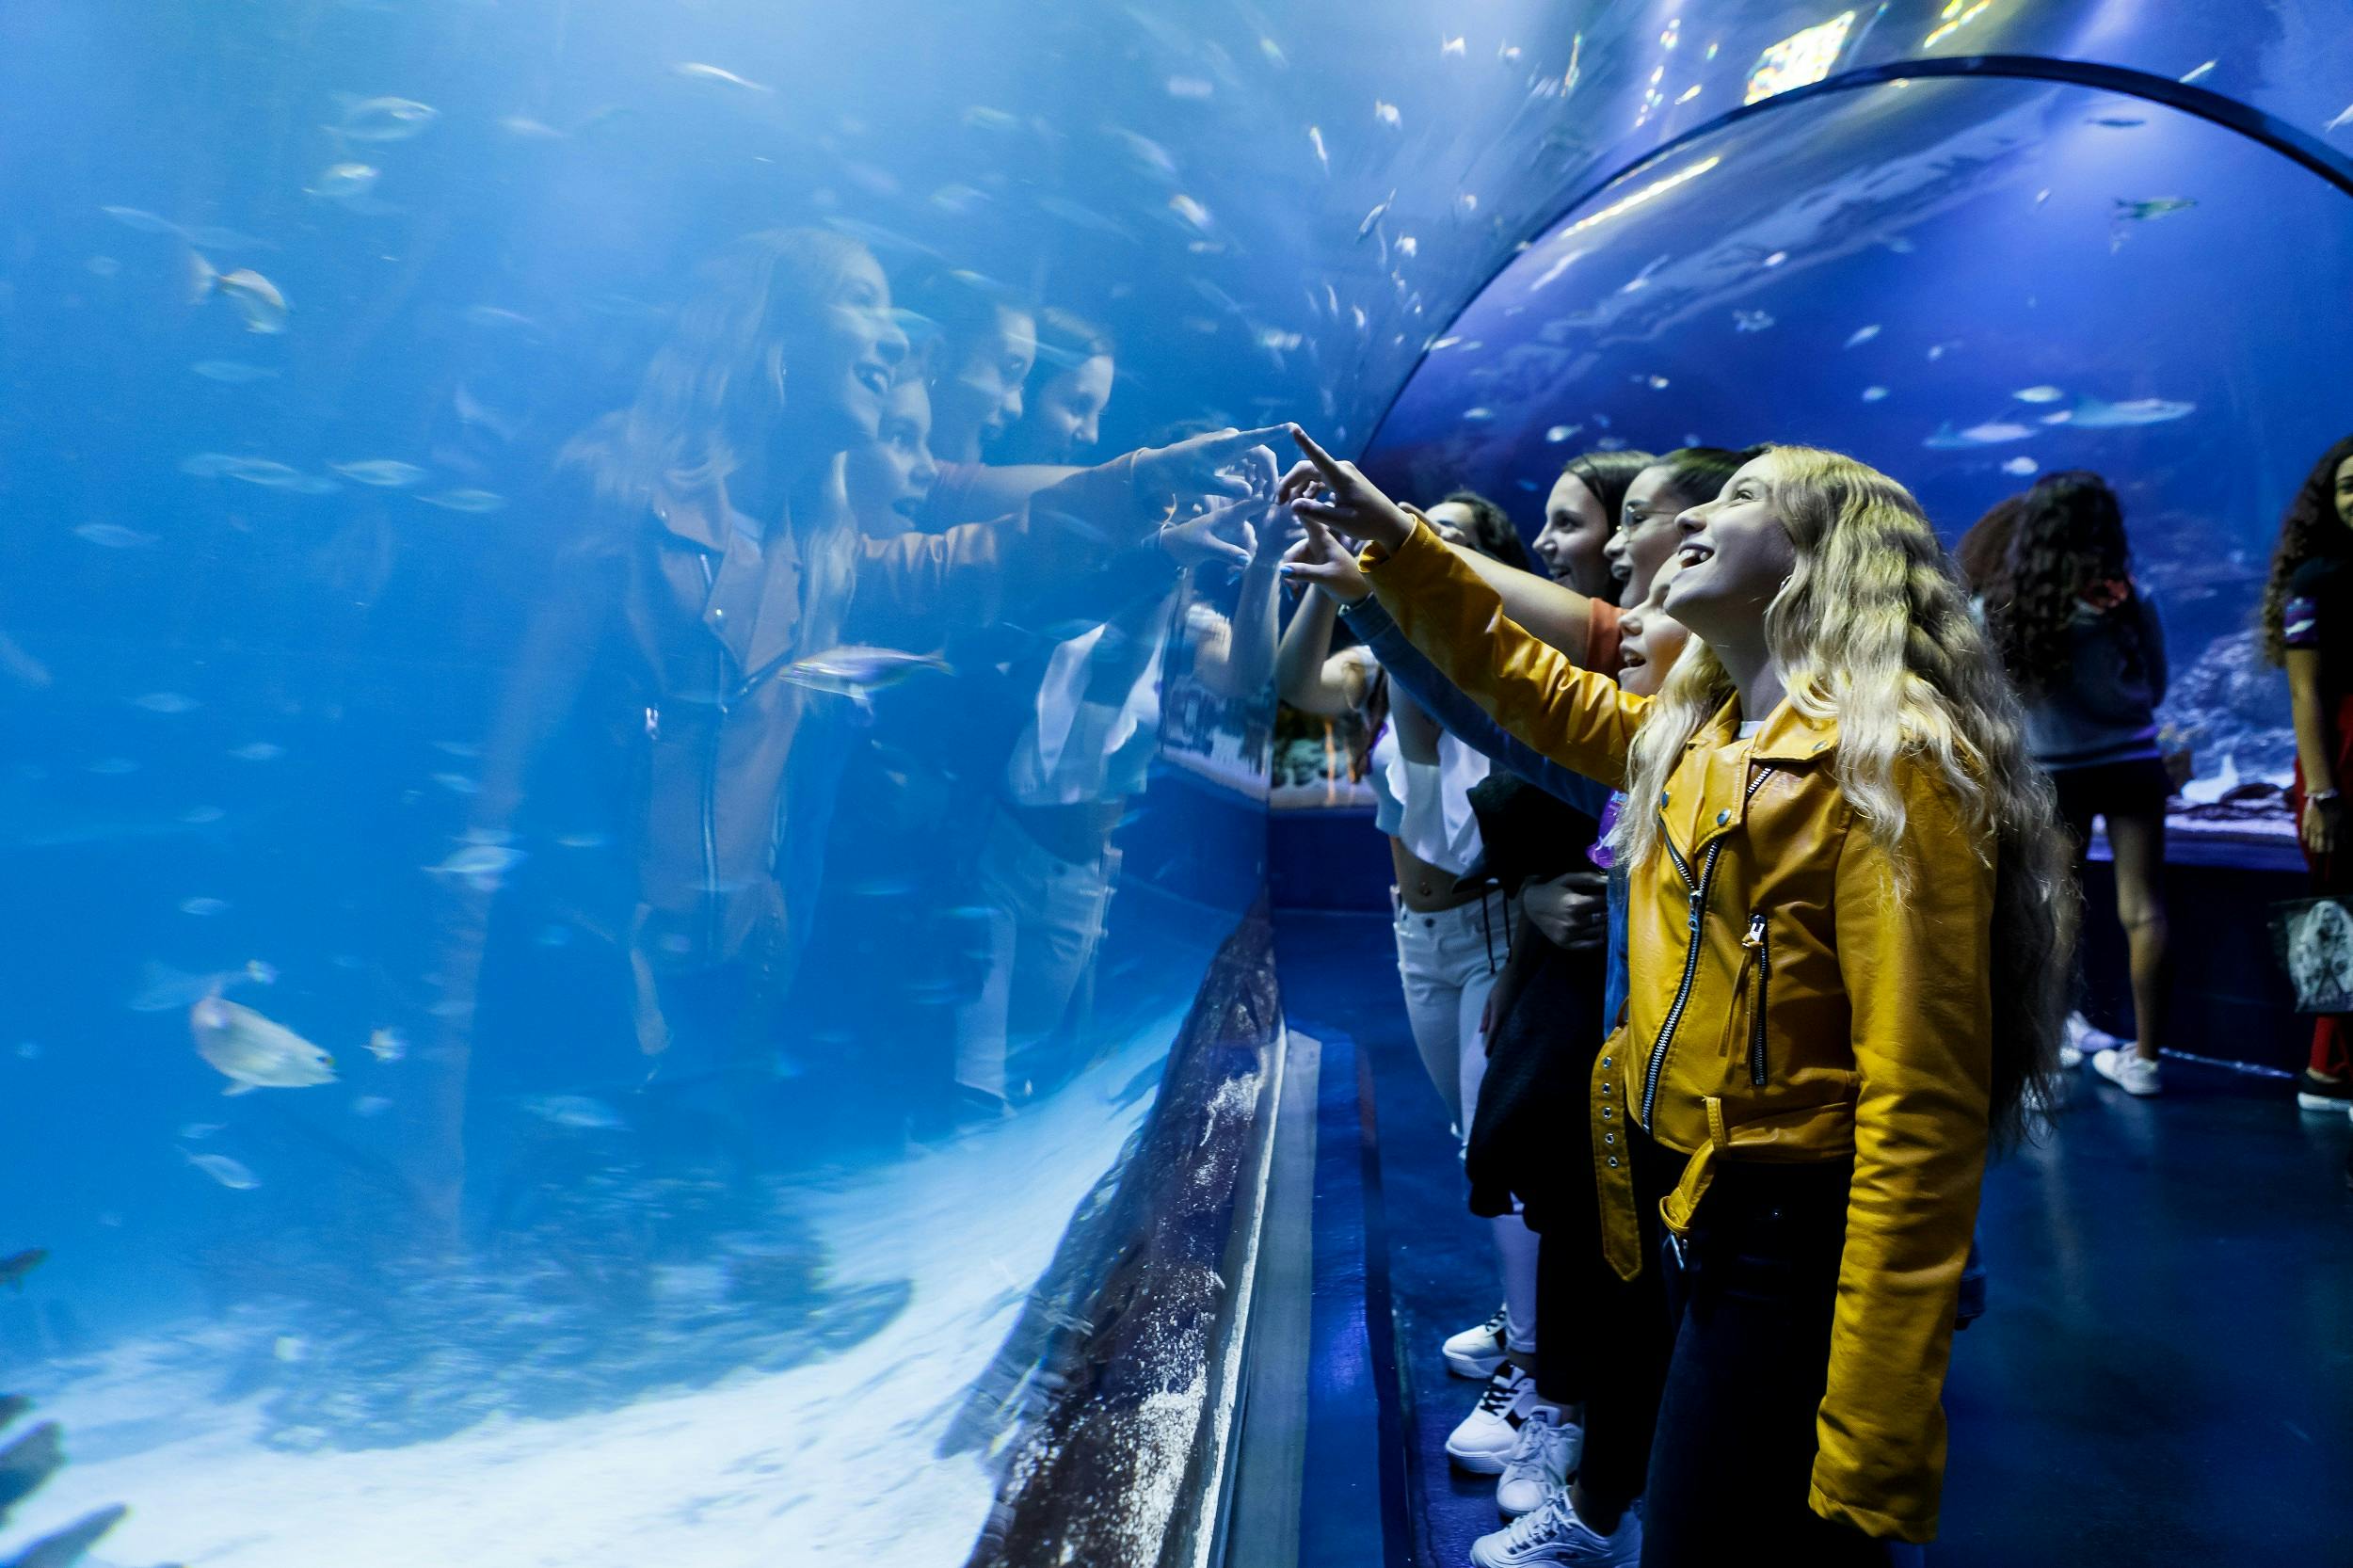 Bilety wstępu do akwarium Atlantis w Madrycie